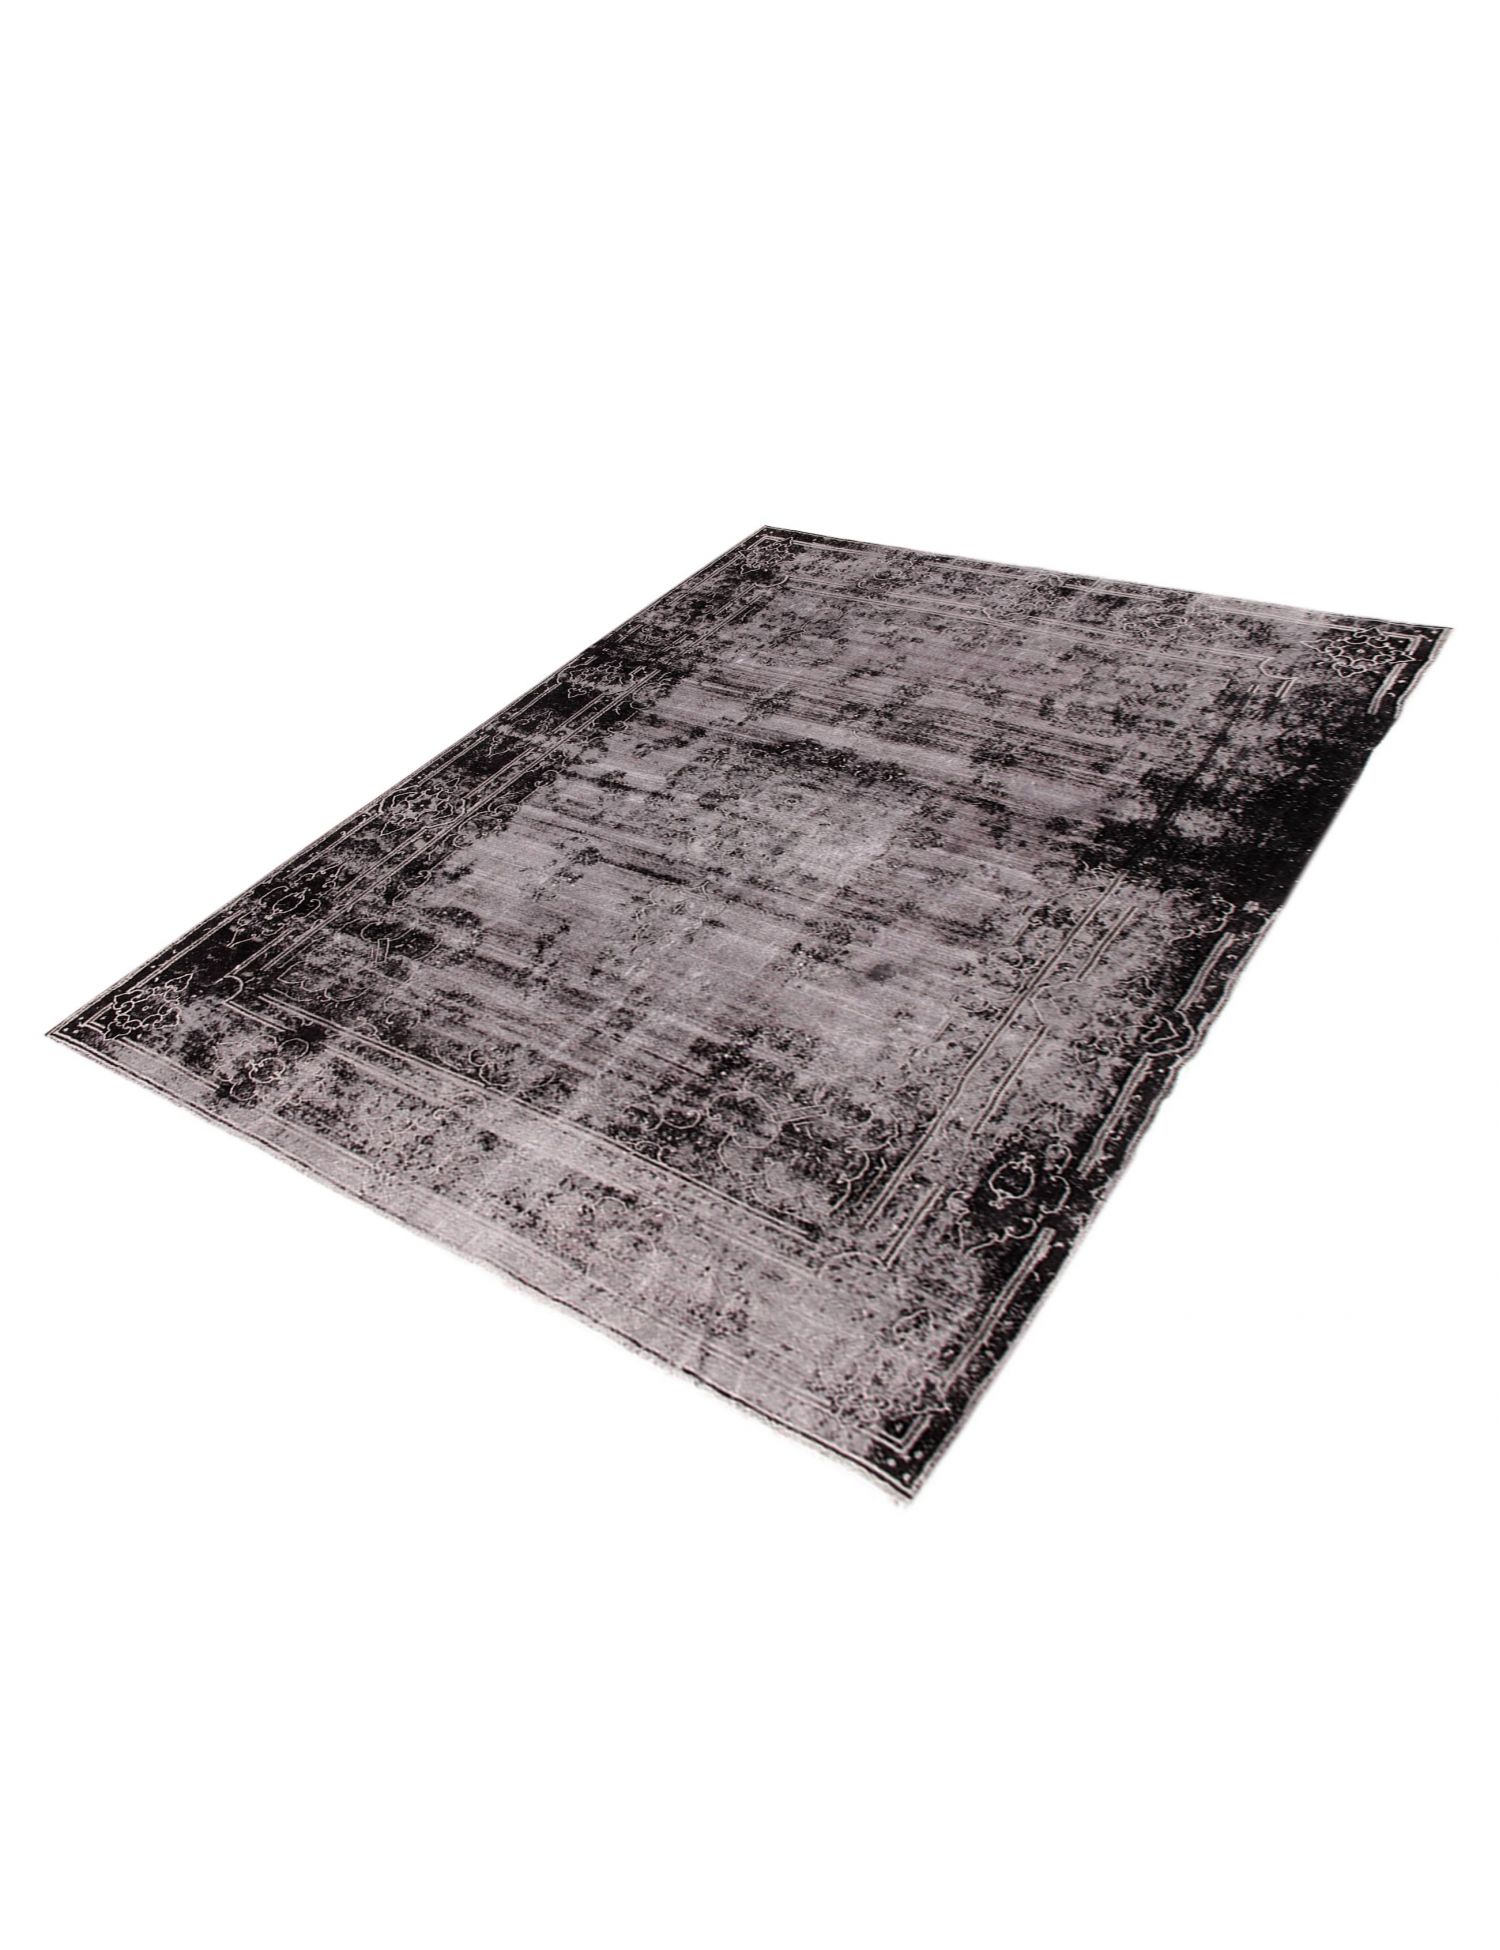 Persian Vintage Carpet  black <br/>430 x 290 cm